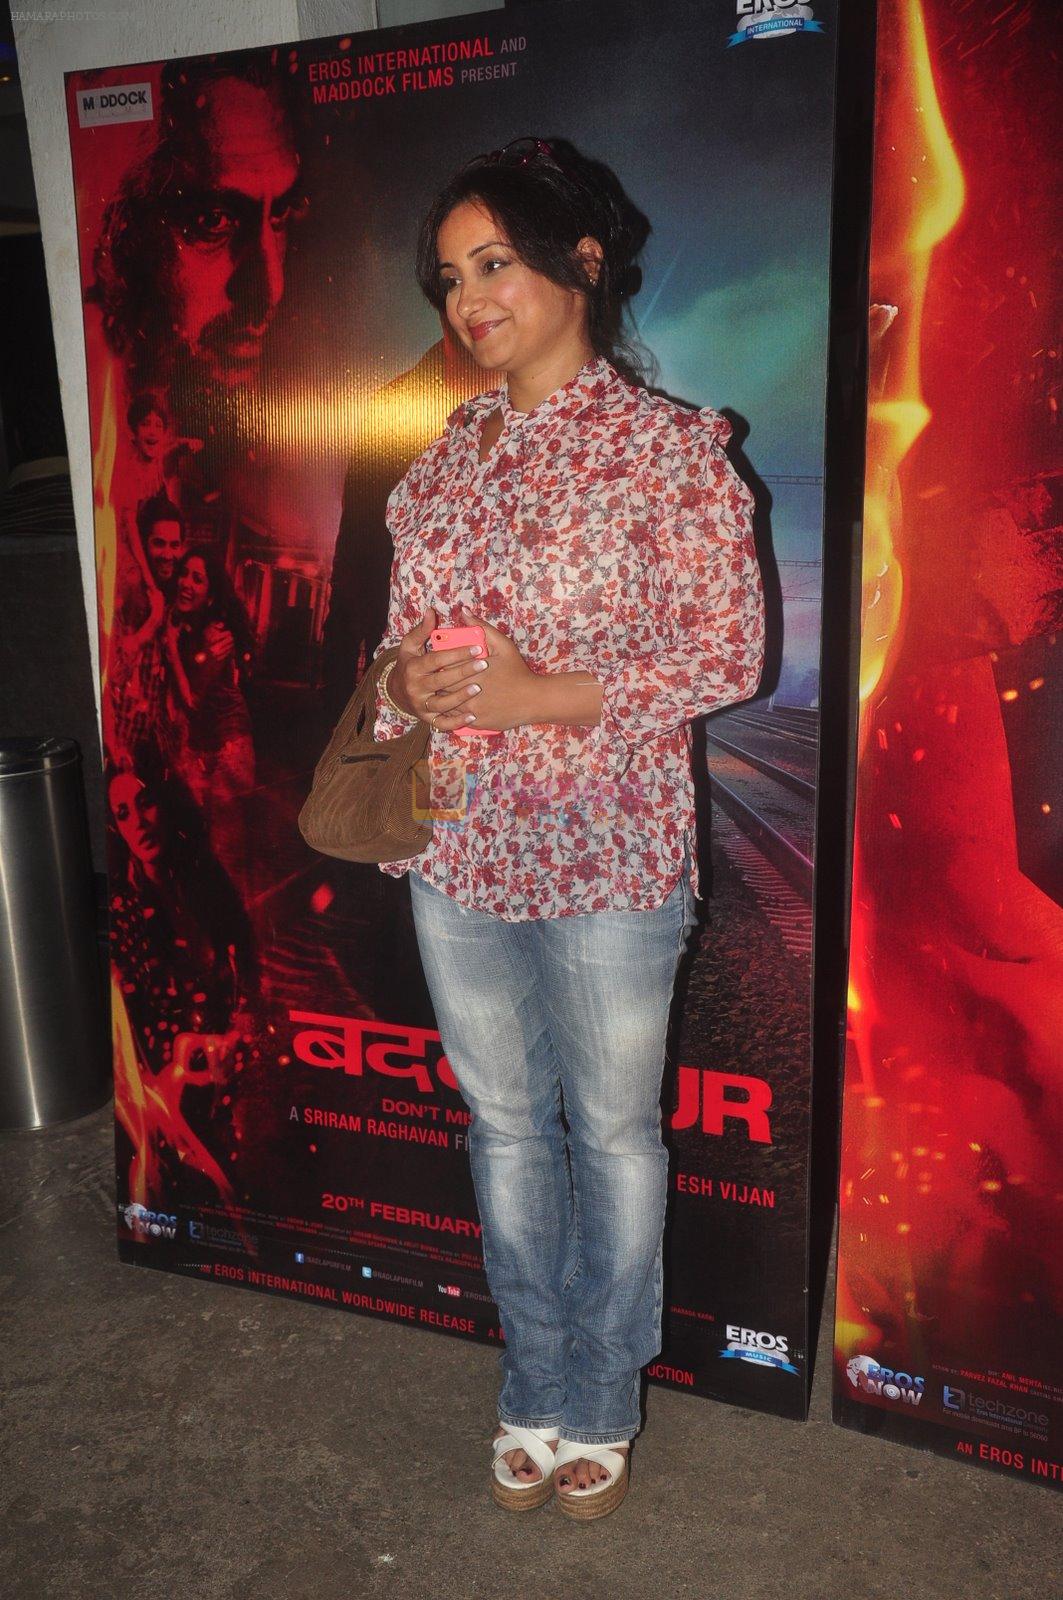 Divya Dutta at Badlapur Screening in Sunny Super Sound on 18th Feb 2015